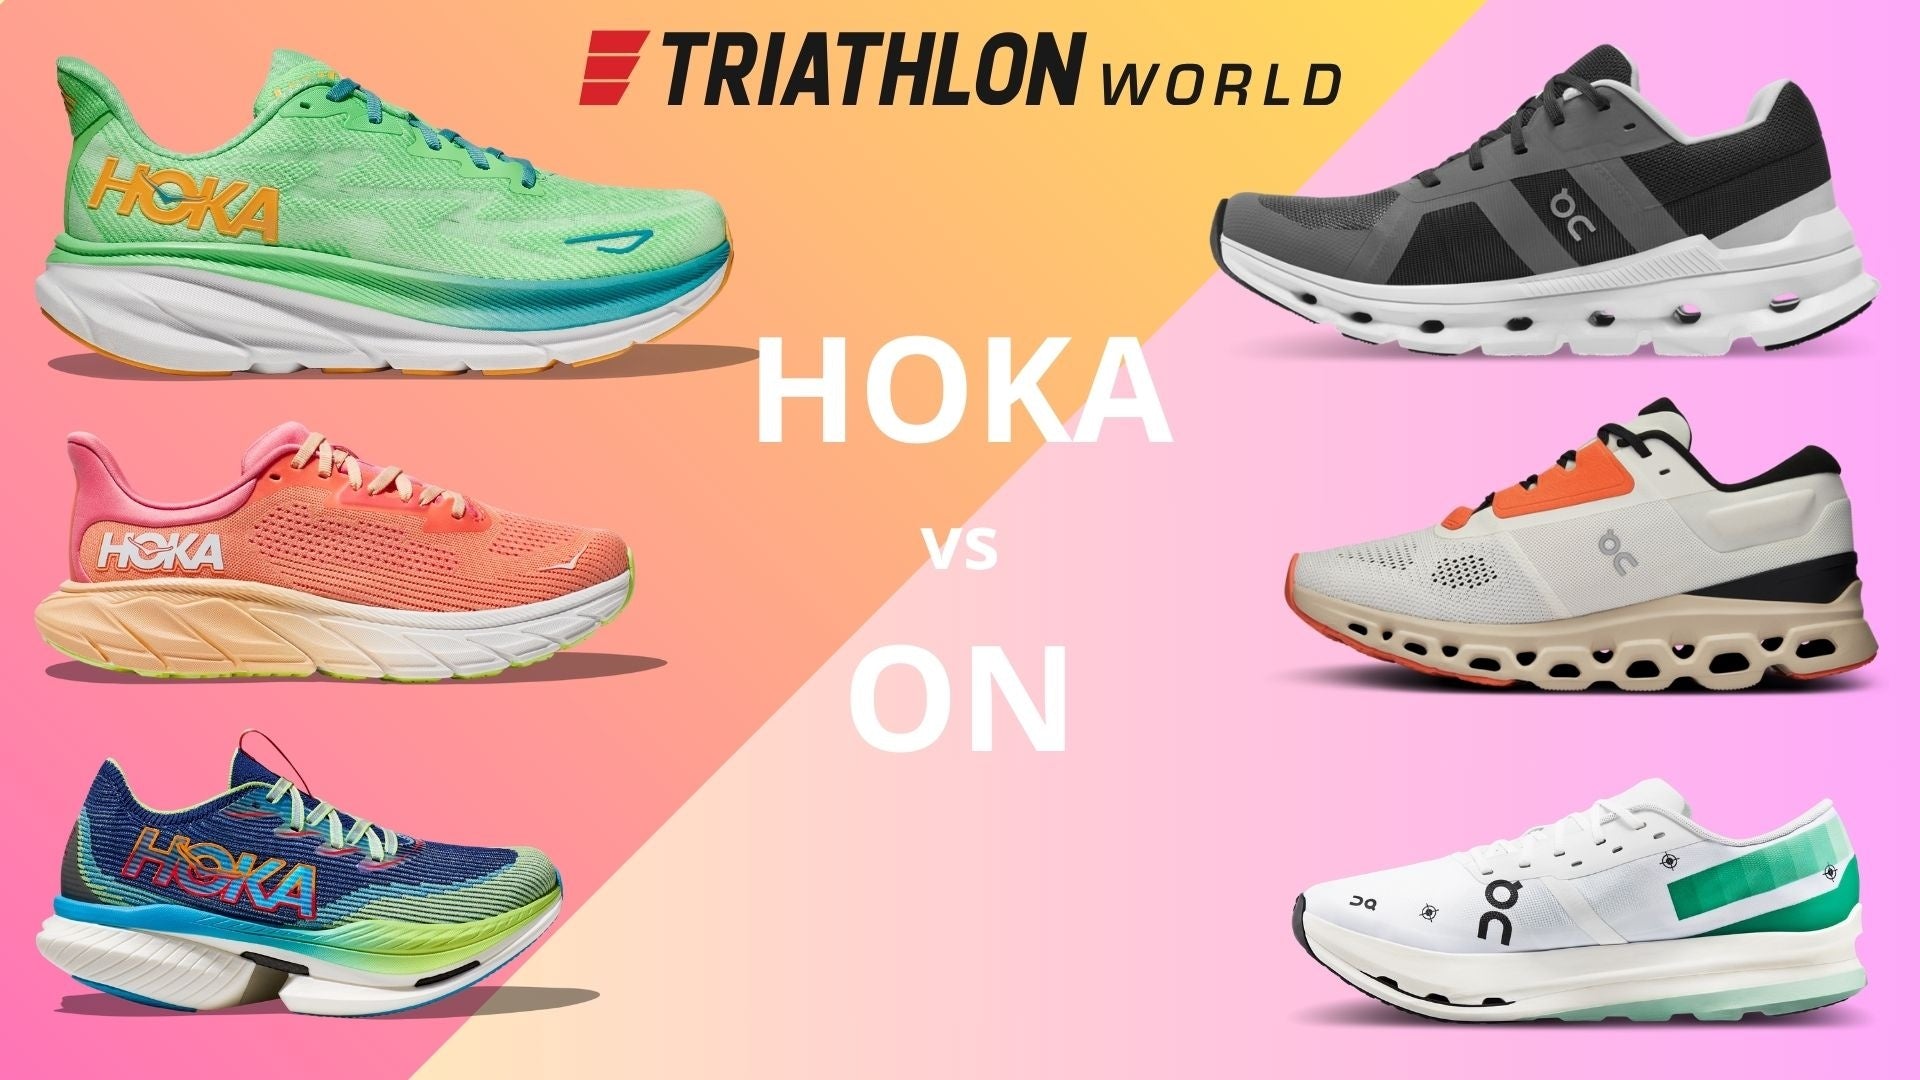 Hoka vs On: TriathlonWorld's honest opinion